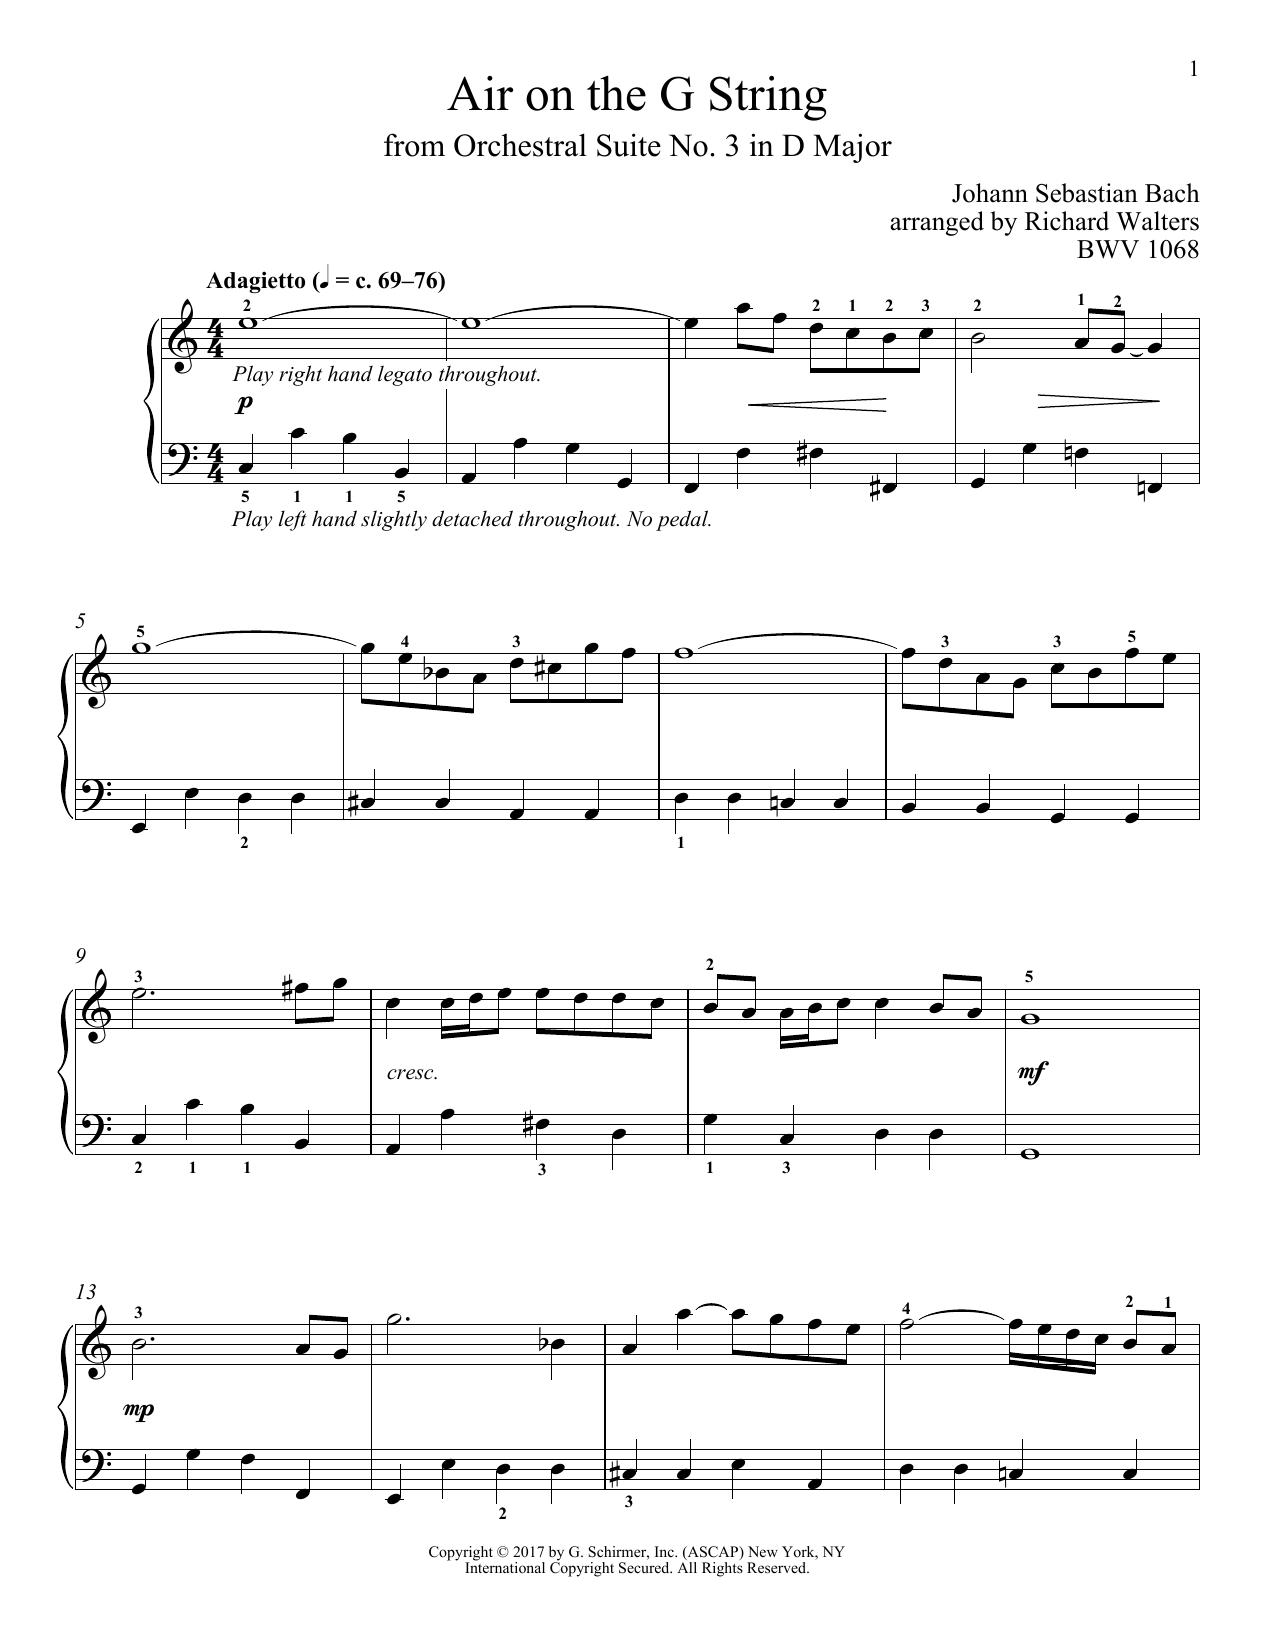 Johann Sebastian Bach Air (Air On The G String) Sheet Music Notes & Chords for Tenor Saxophone - Download or Print PDF